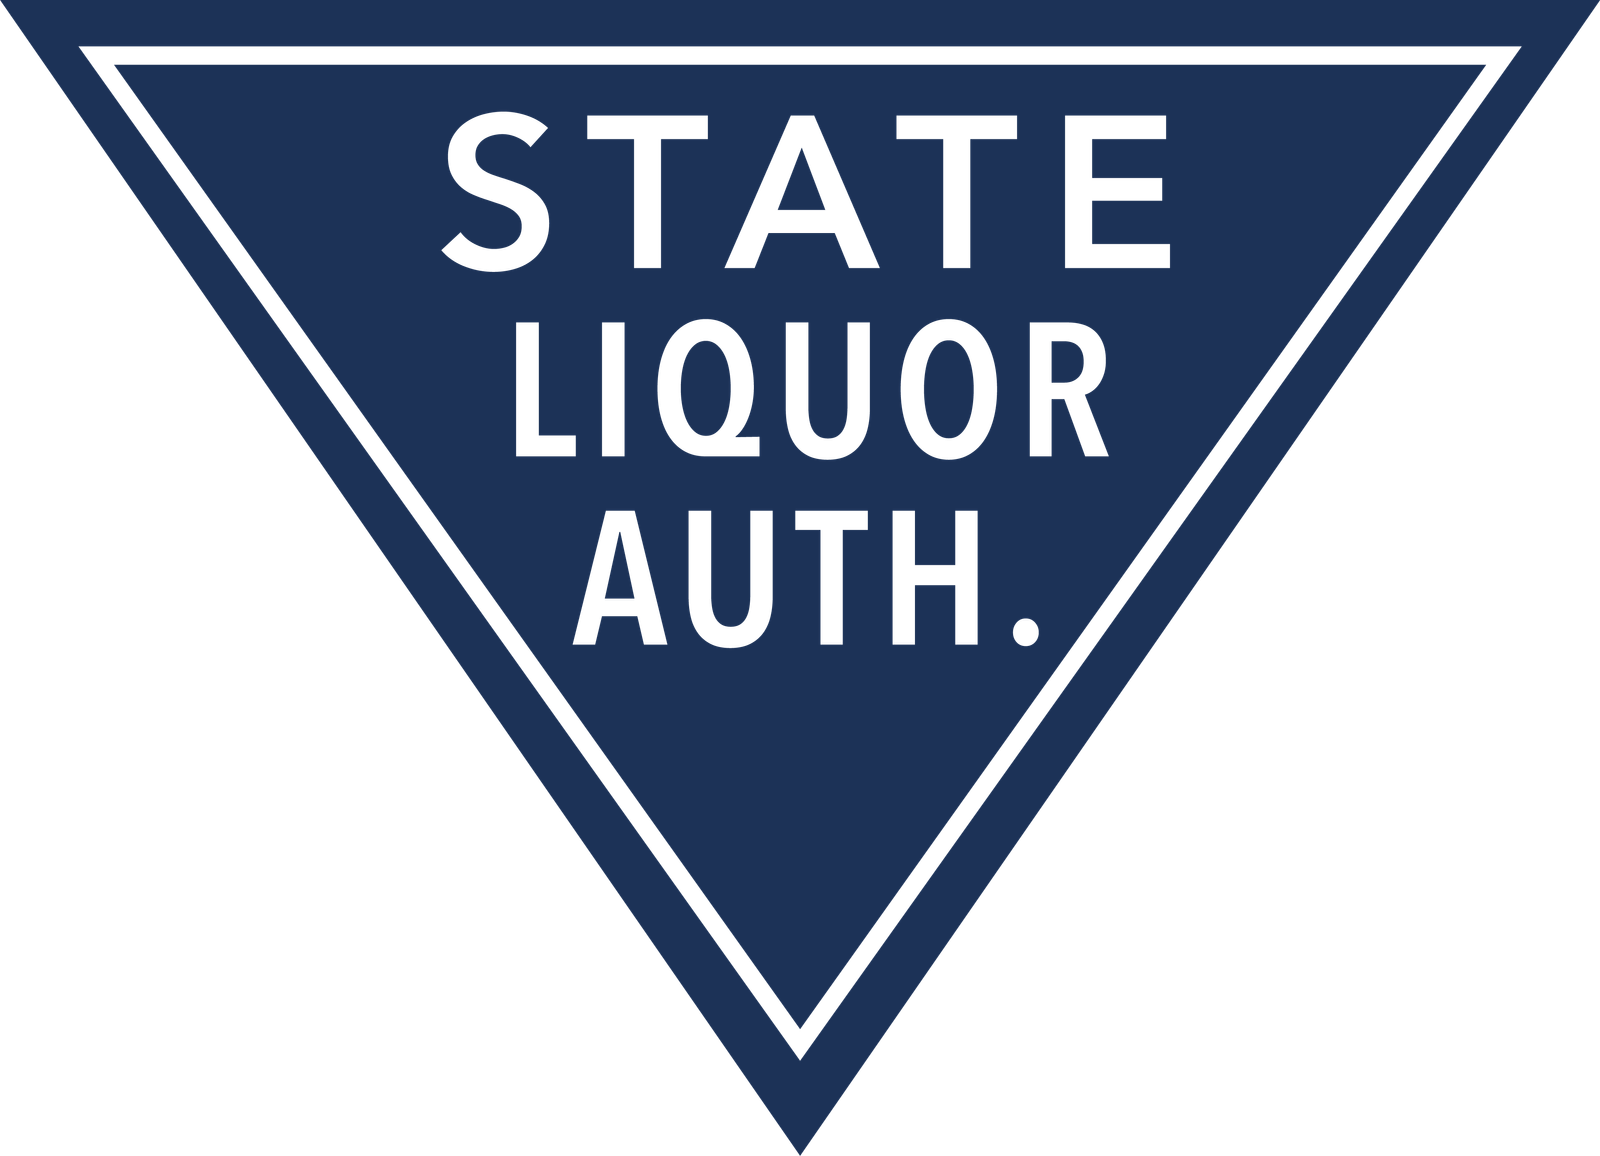 State Liquor Authority